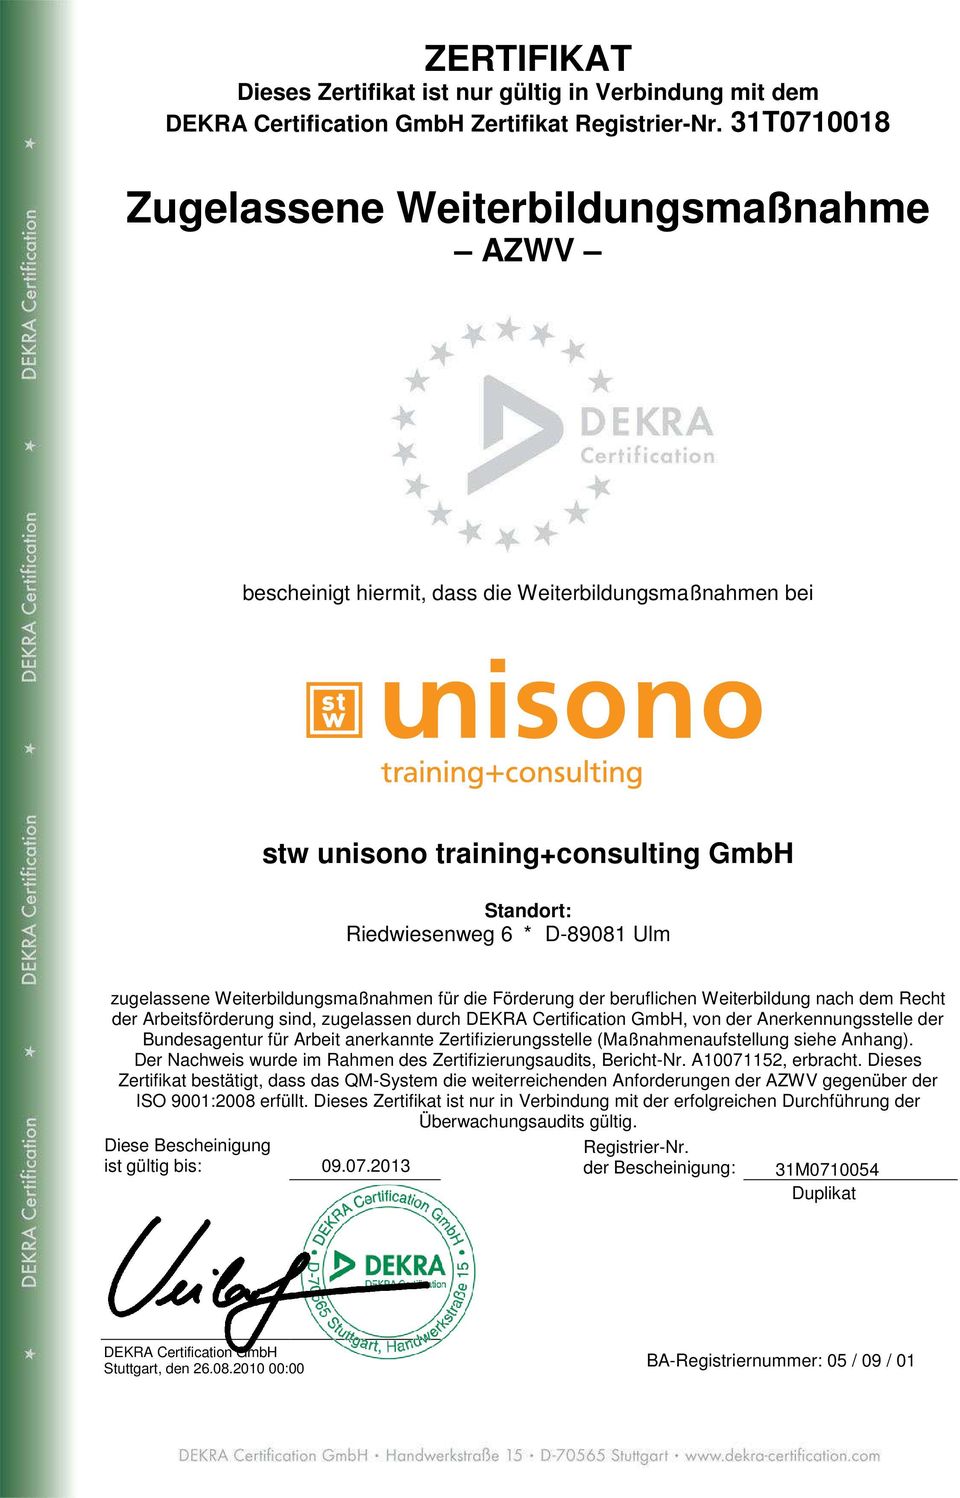 Weiterbildungsmaßnahmen für die Förderung der beruflichen Weiterbildung nach dem Recht der Arbeitsförderung sind, zugelassen durch DEKRA Certification GmbH, von der Anerkennungsstelle der